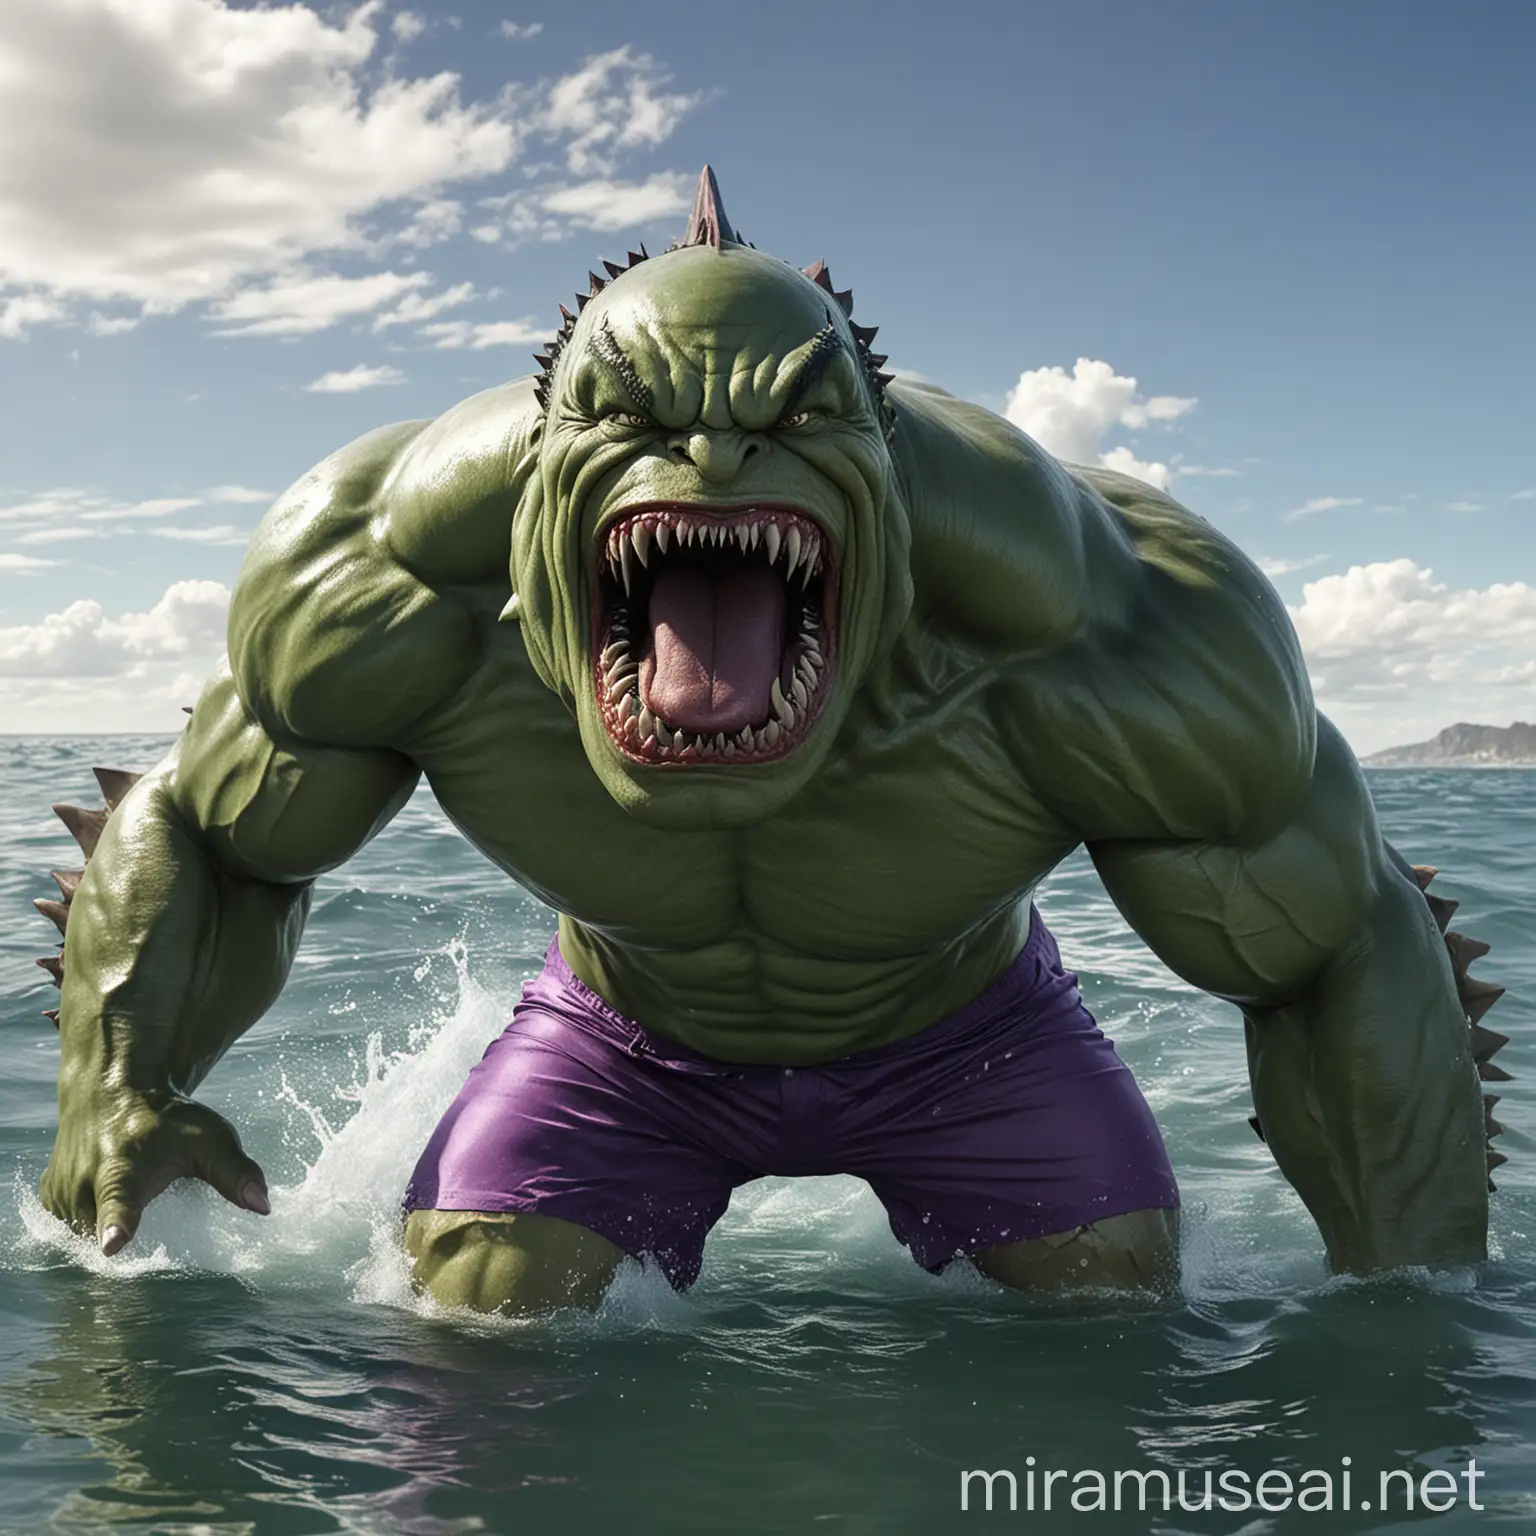 Muscular Hulk Transformation into Shark in Ocean